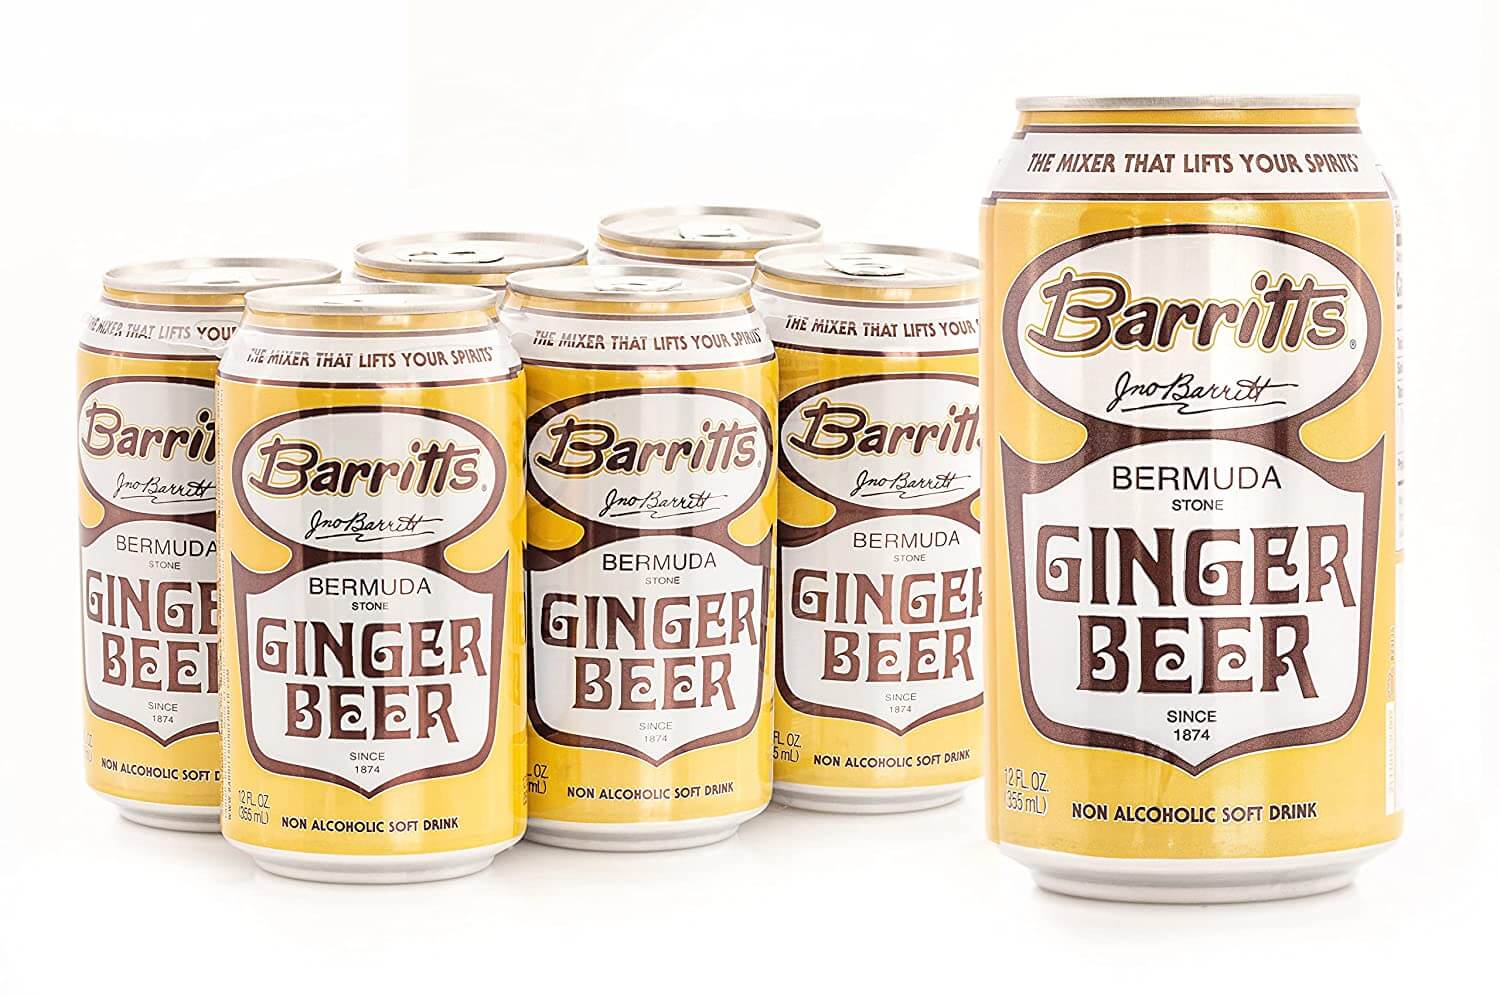 Barritt's Ginger Beer